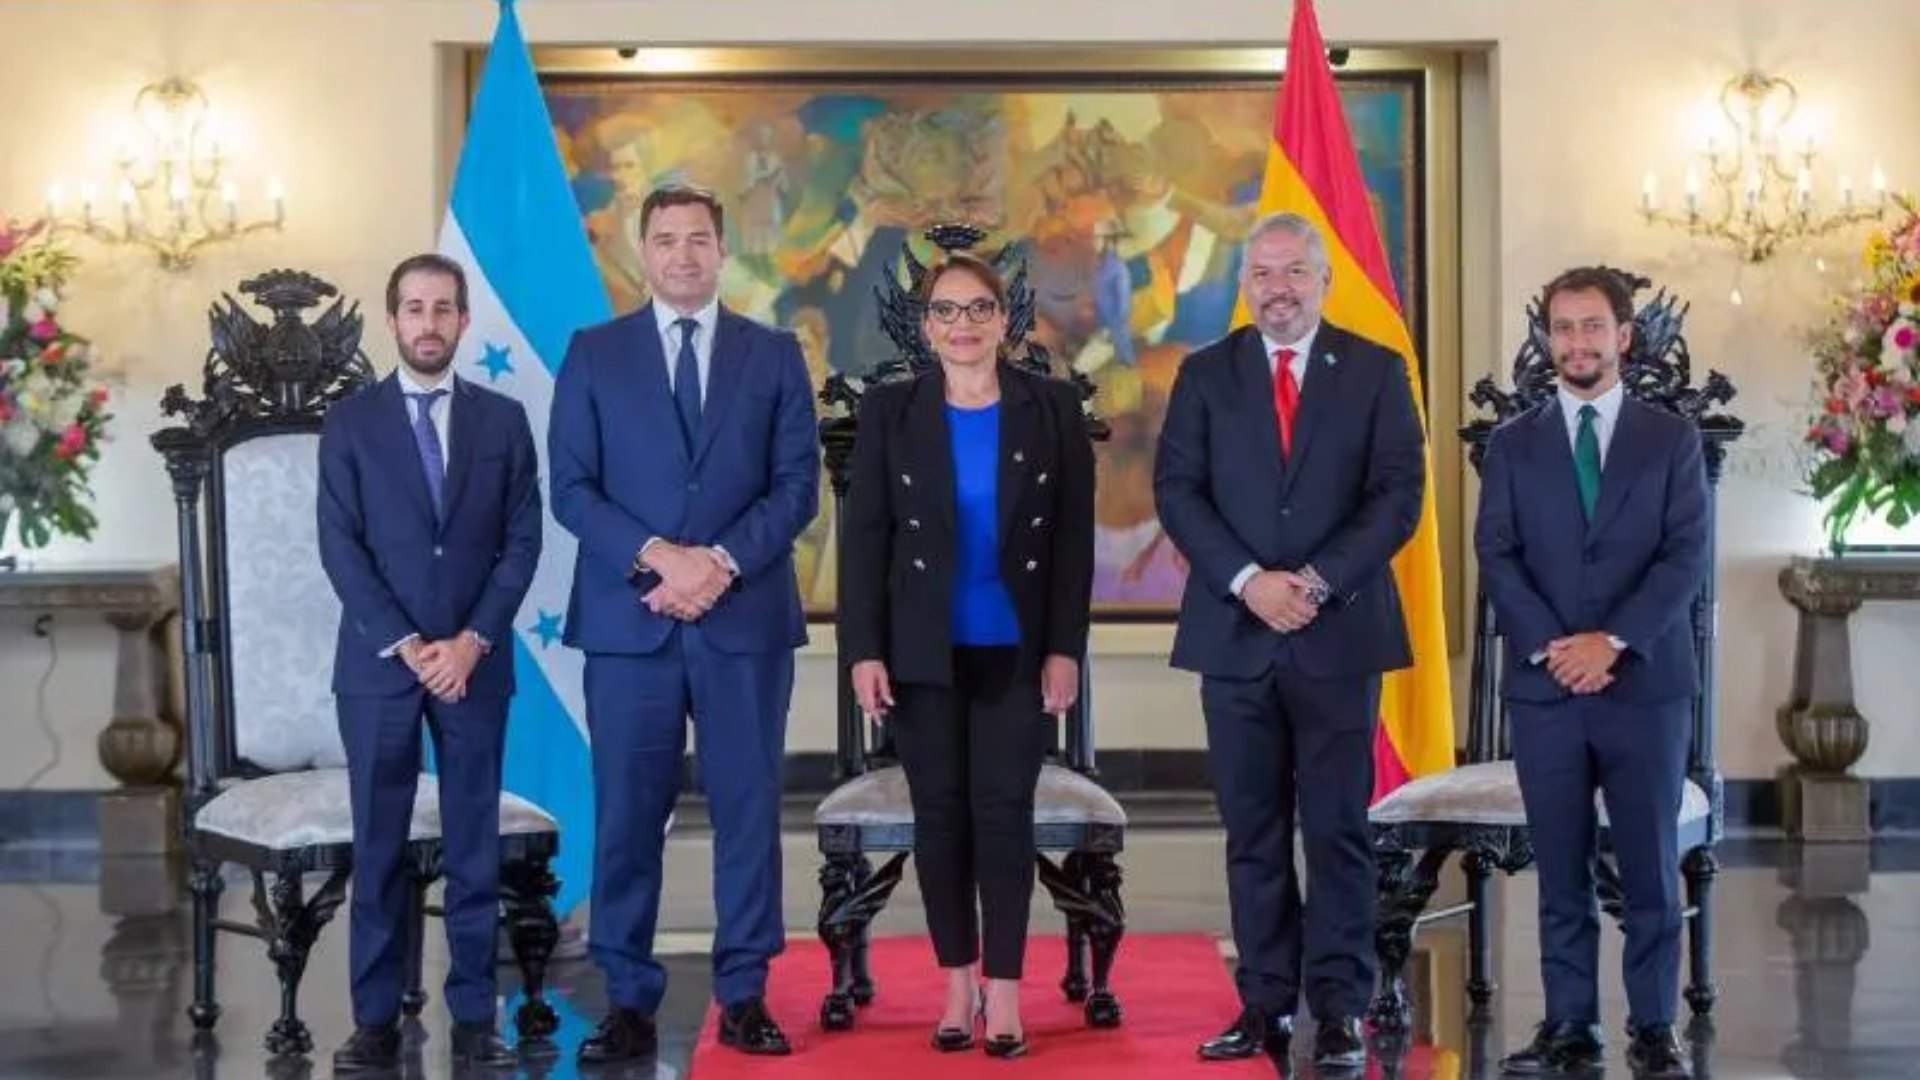 La Embajada de España en Honduras ha confirmado este domingo que el préstamo de 70 millones de euros sigue en pie y en camino de concretarse.